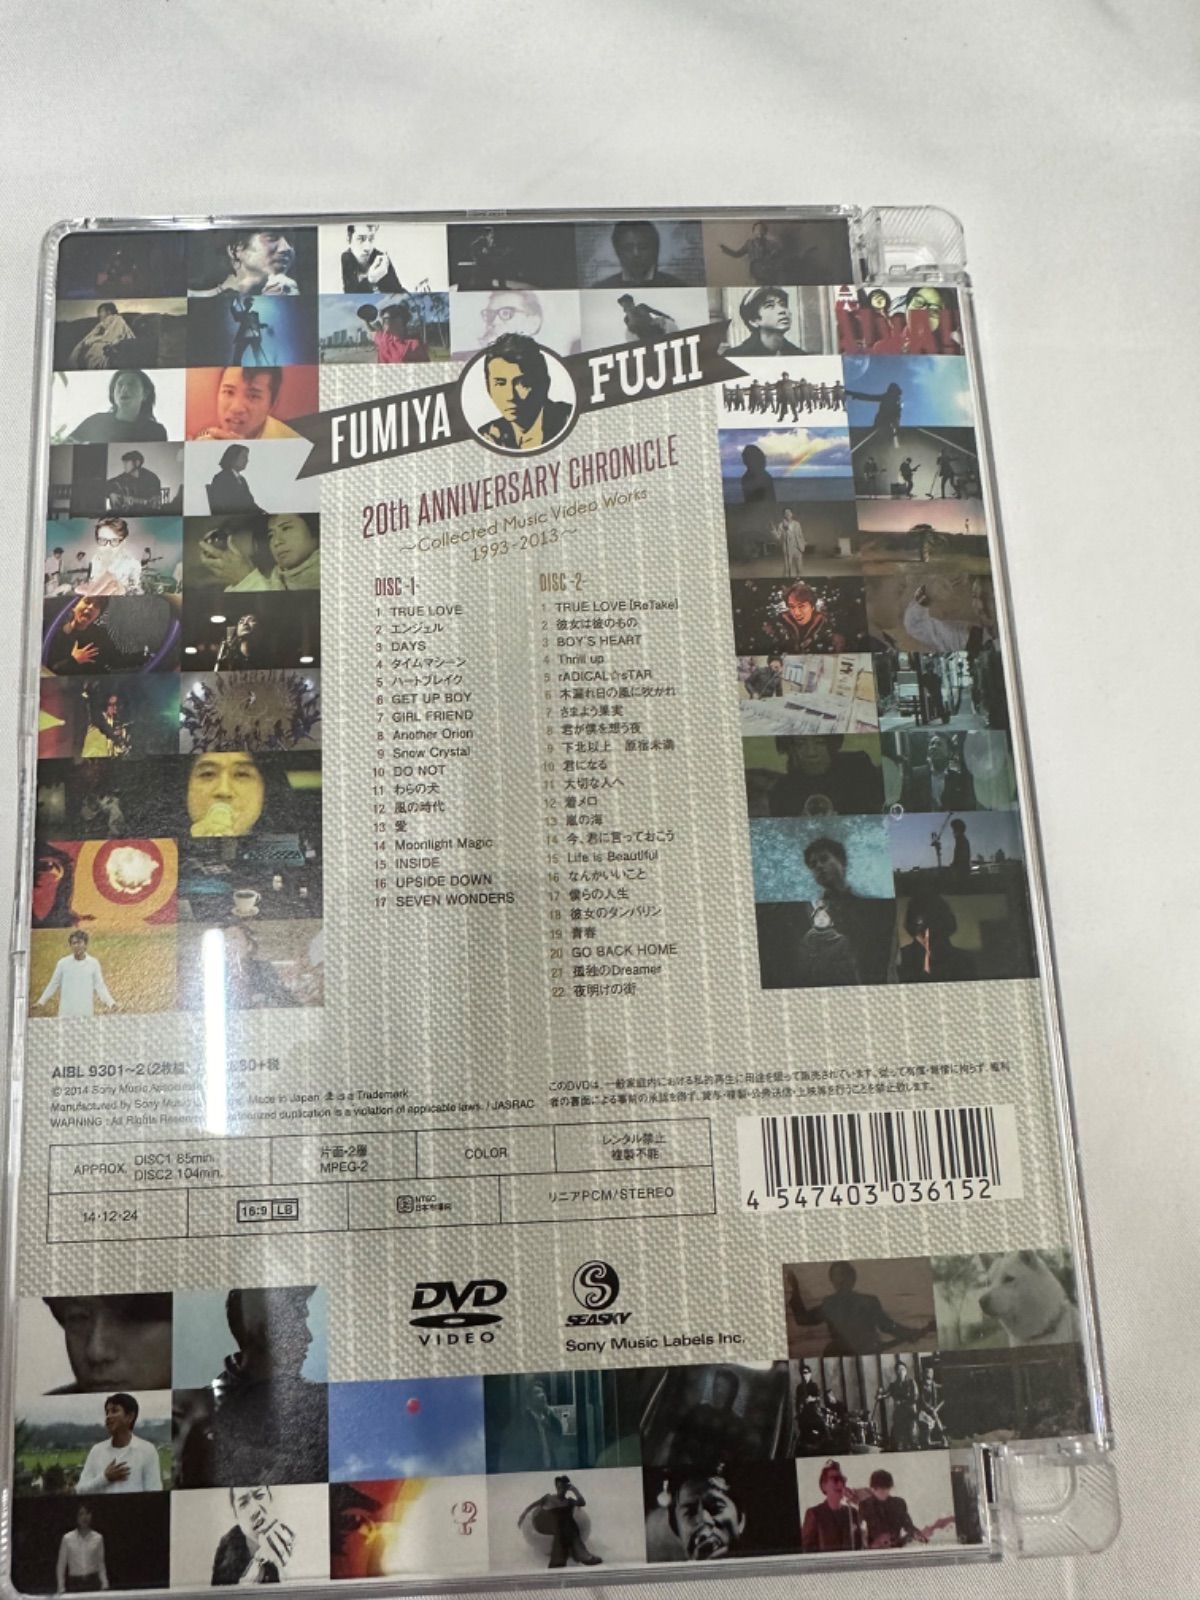 邦楽DVD 藤井フミヤ/FUMIYA FUJII 20th ANNIVERSARY CHRONICLE～Collected Music Video  Works 1993-2013～ [初回限定盤] 管理7.153 - メルカリ